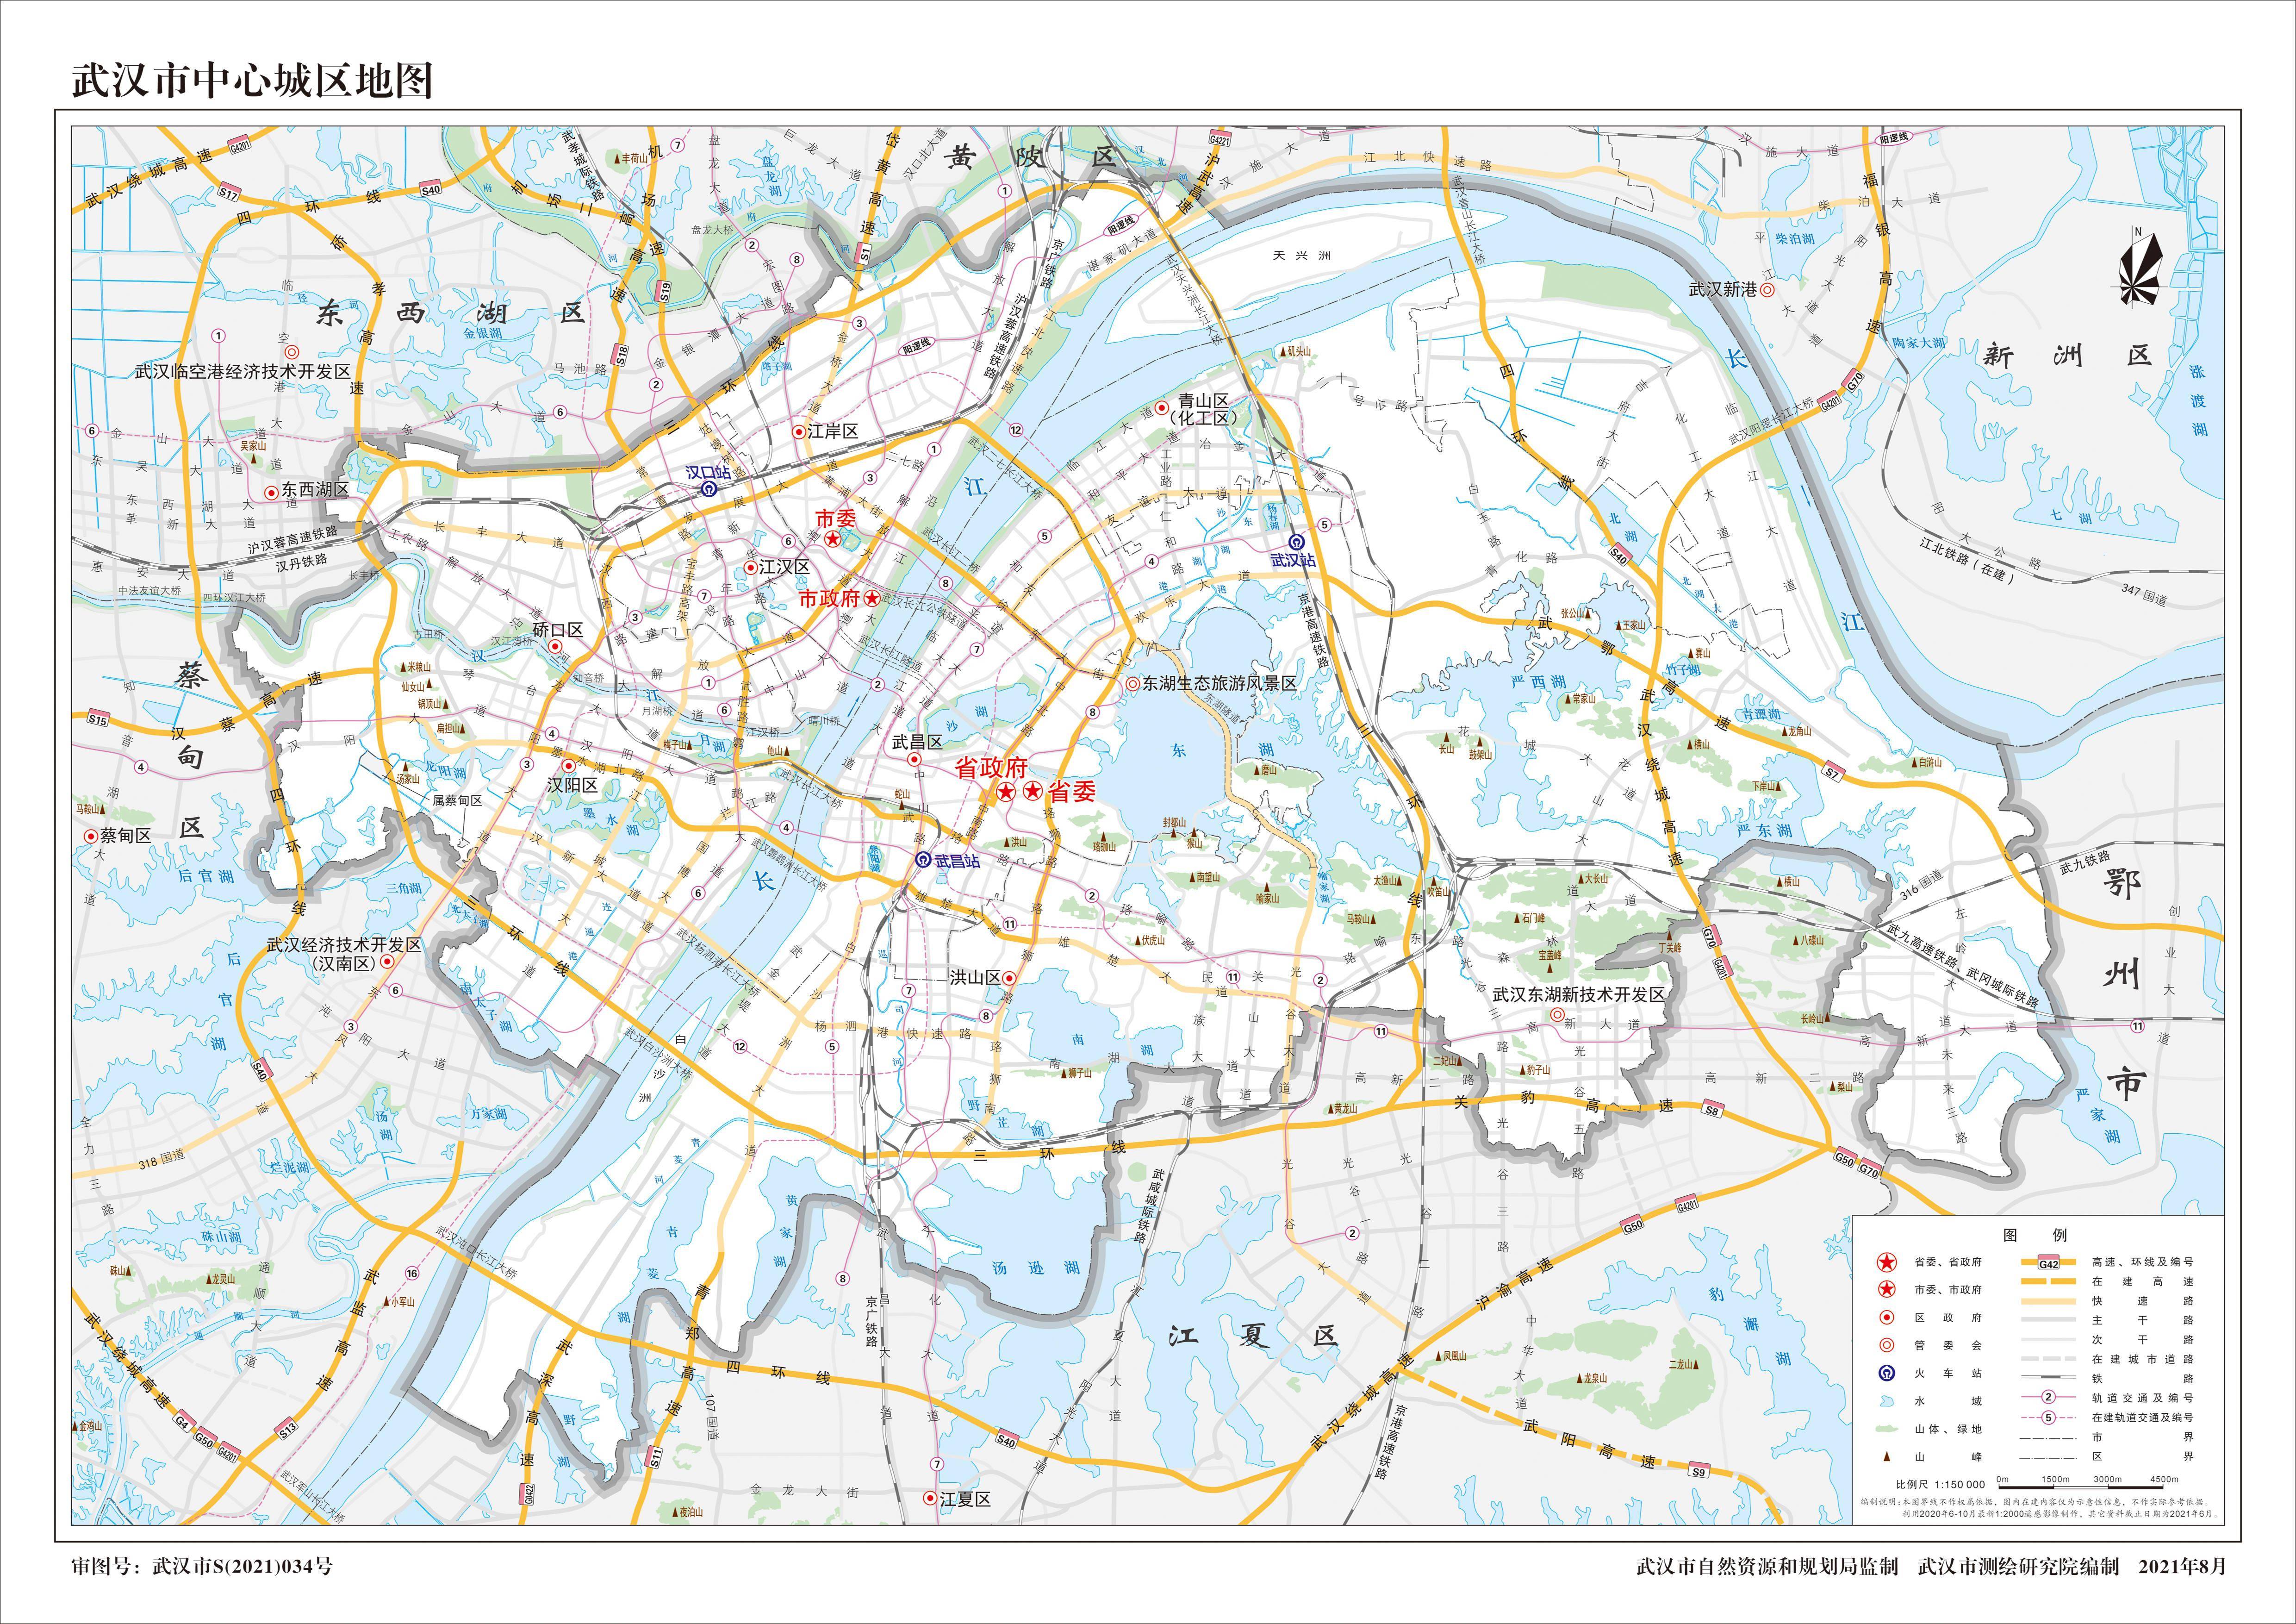 2021年洪山区地图10.2021年东西湖区地图11.2021年汉南区地图12.